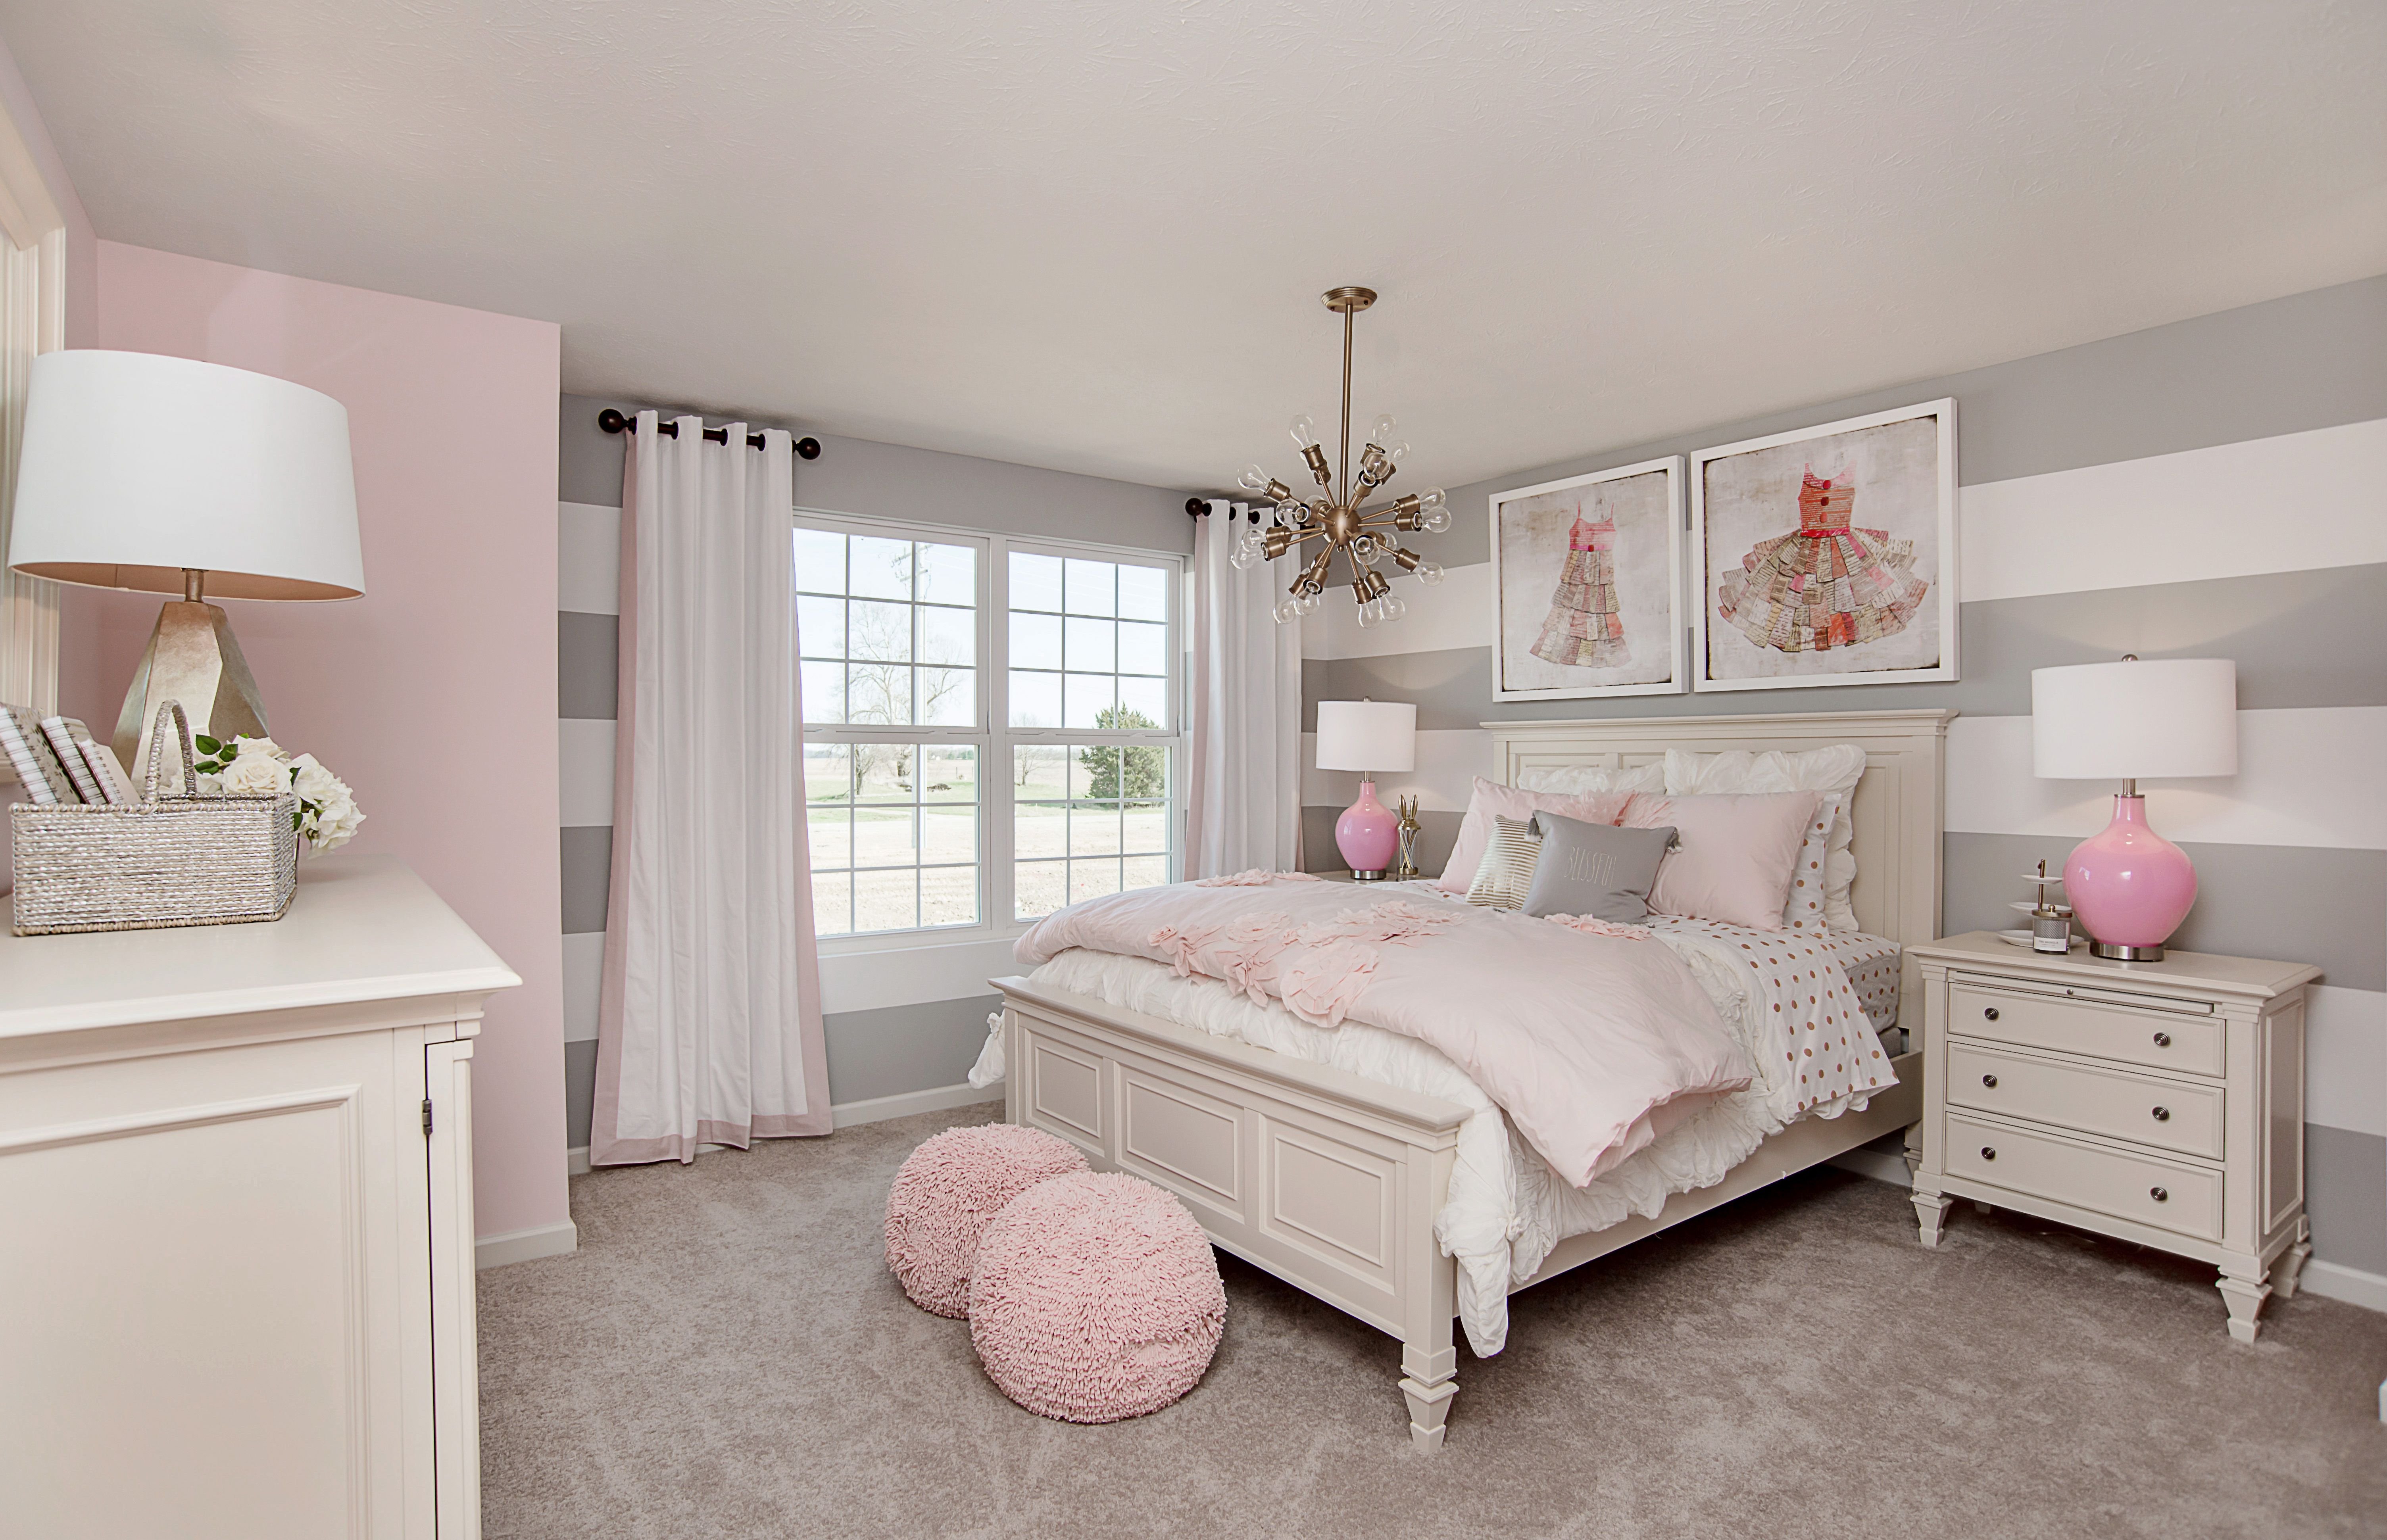 детская комната в розовом цвете фото